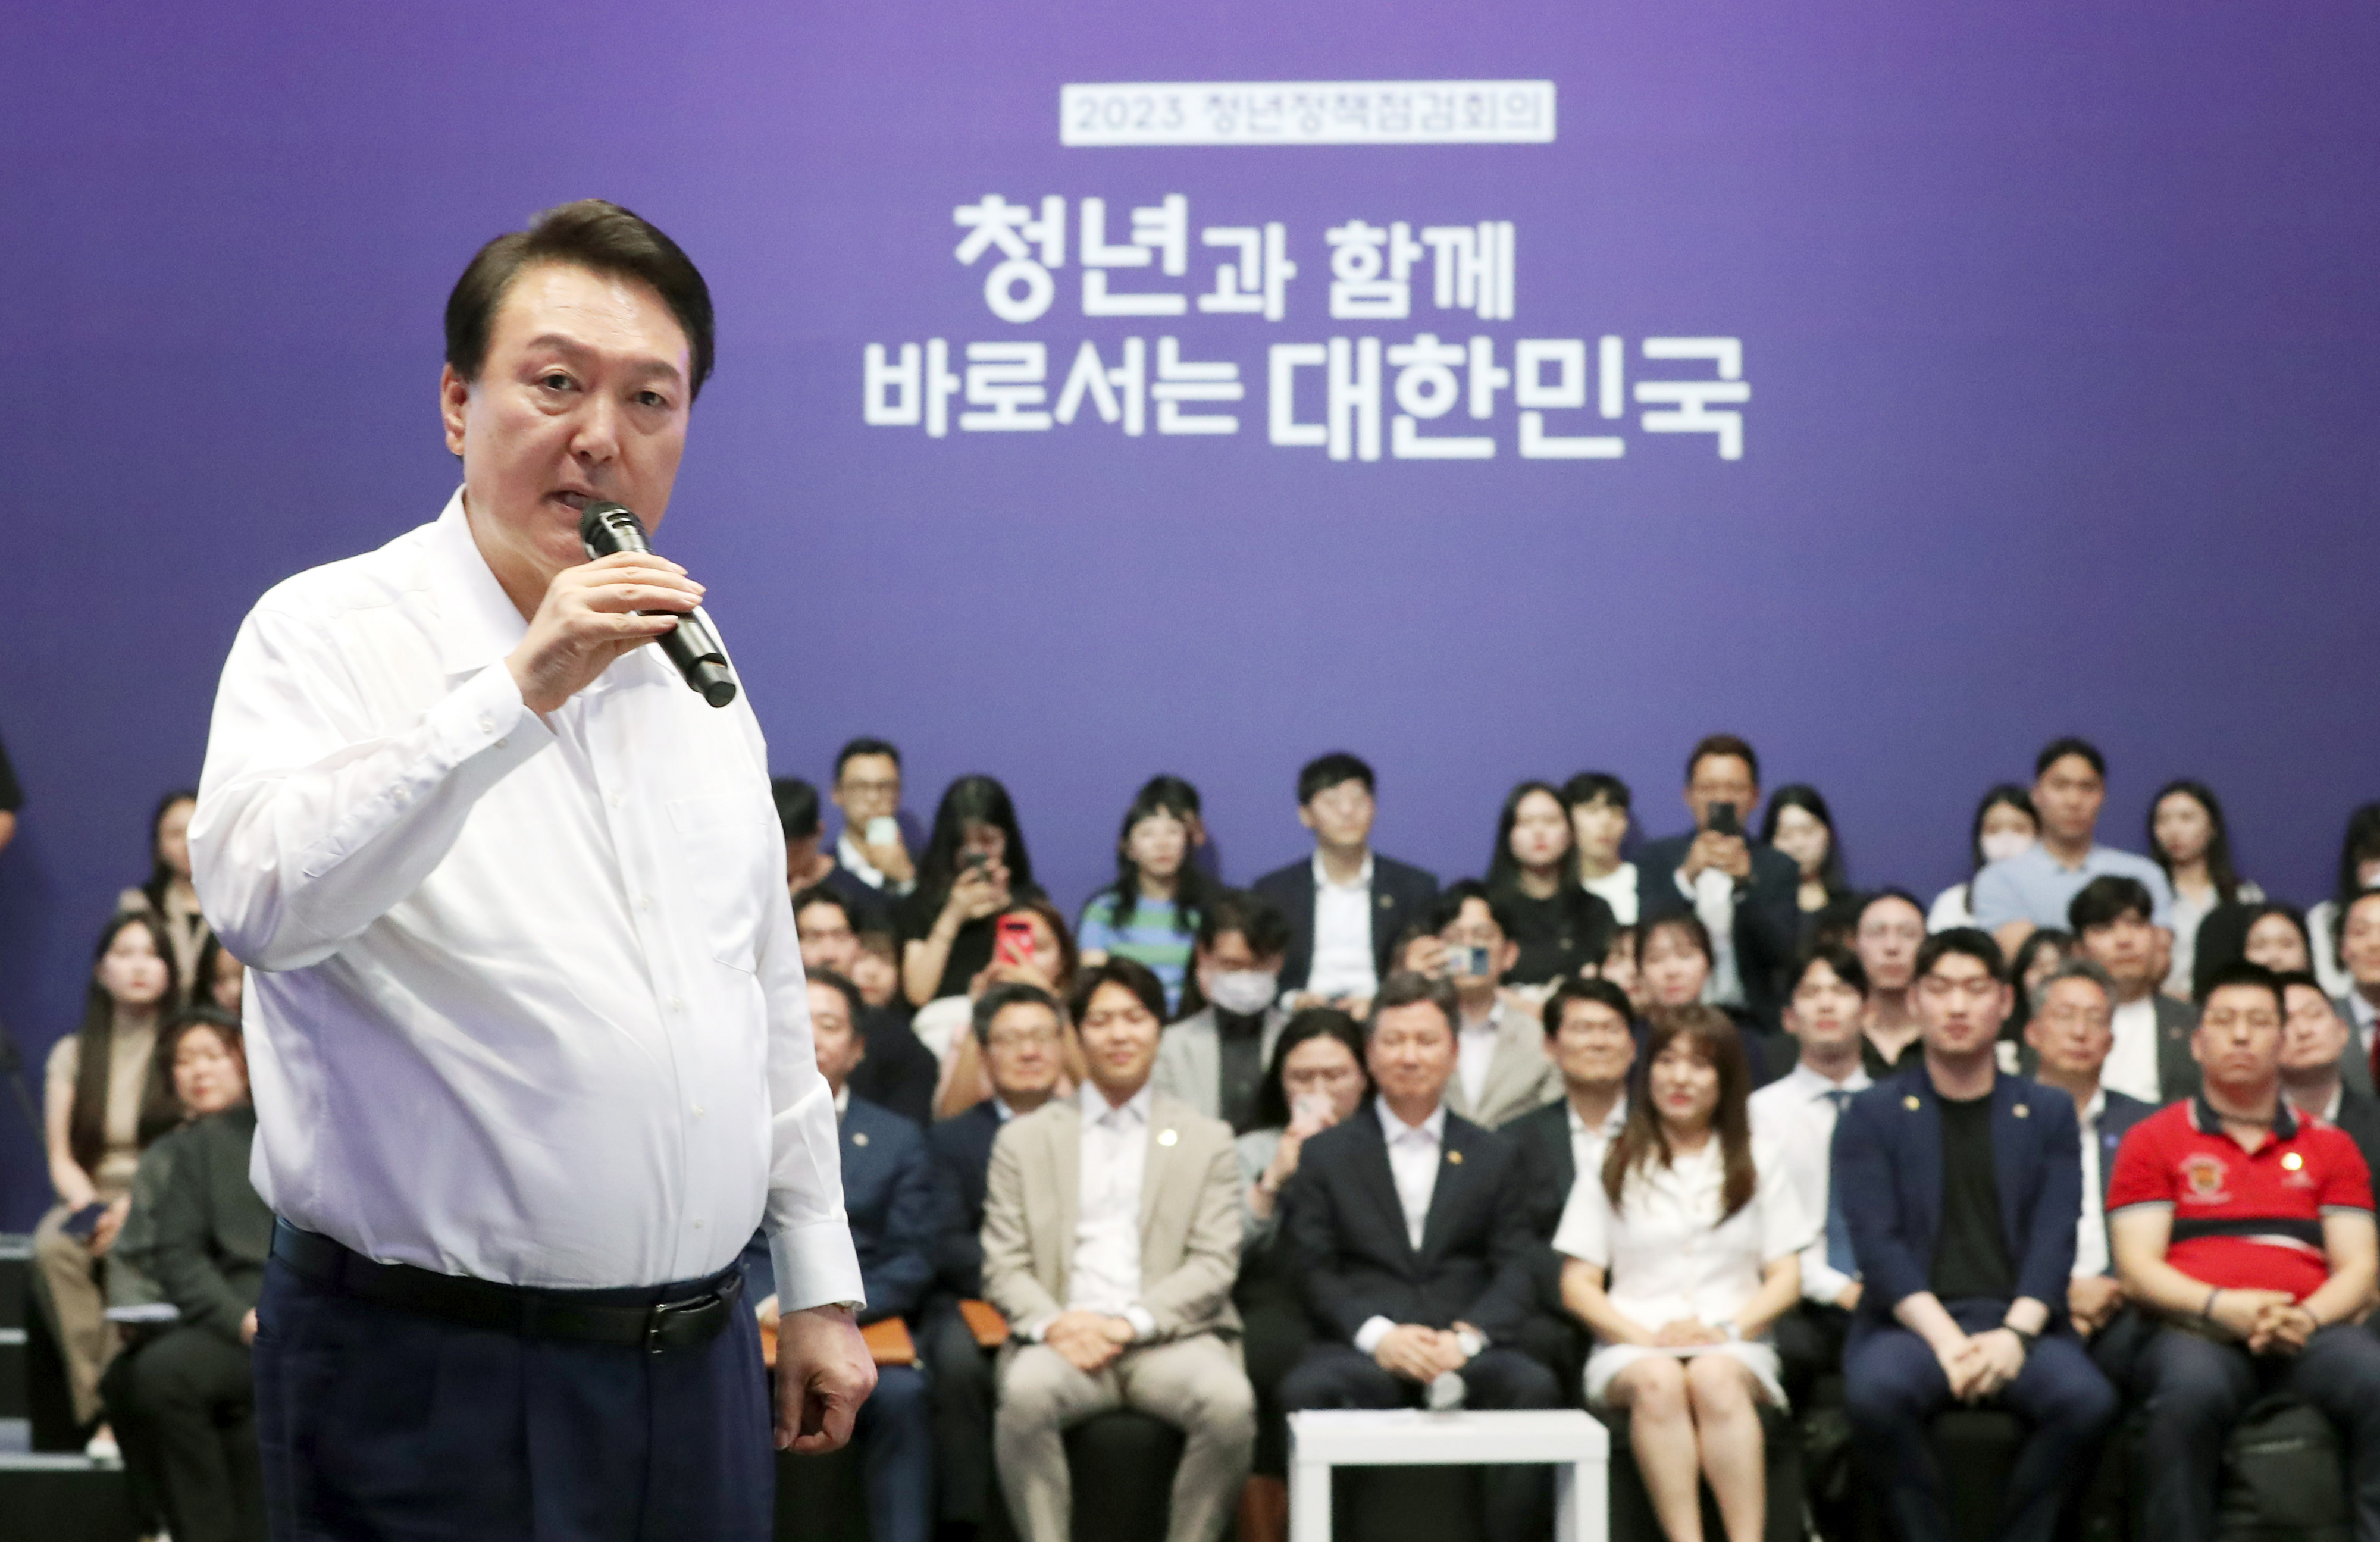 청년정책 점검회의에서 발언하는 윤석열 대통령